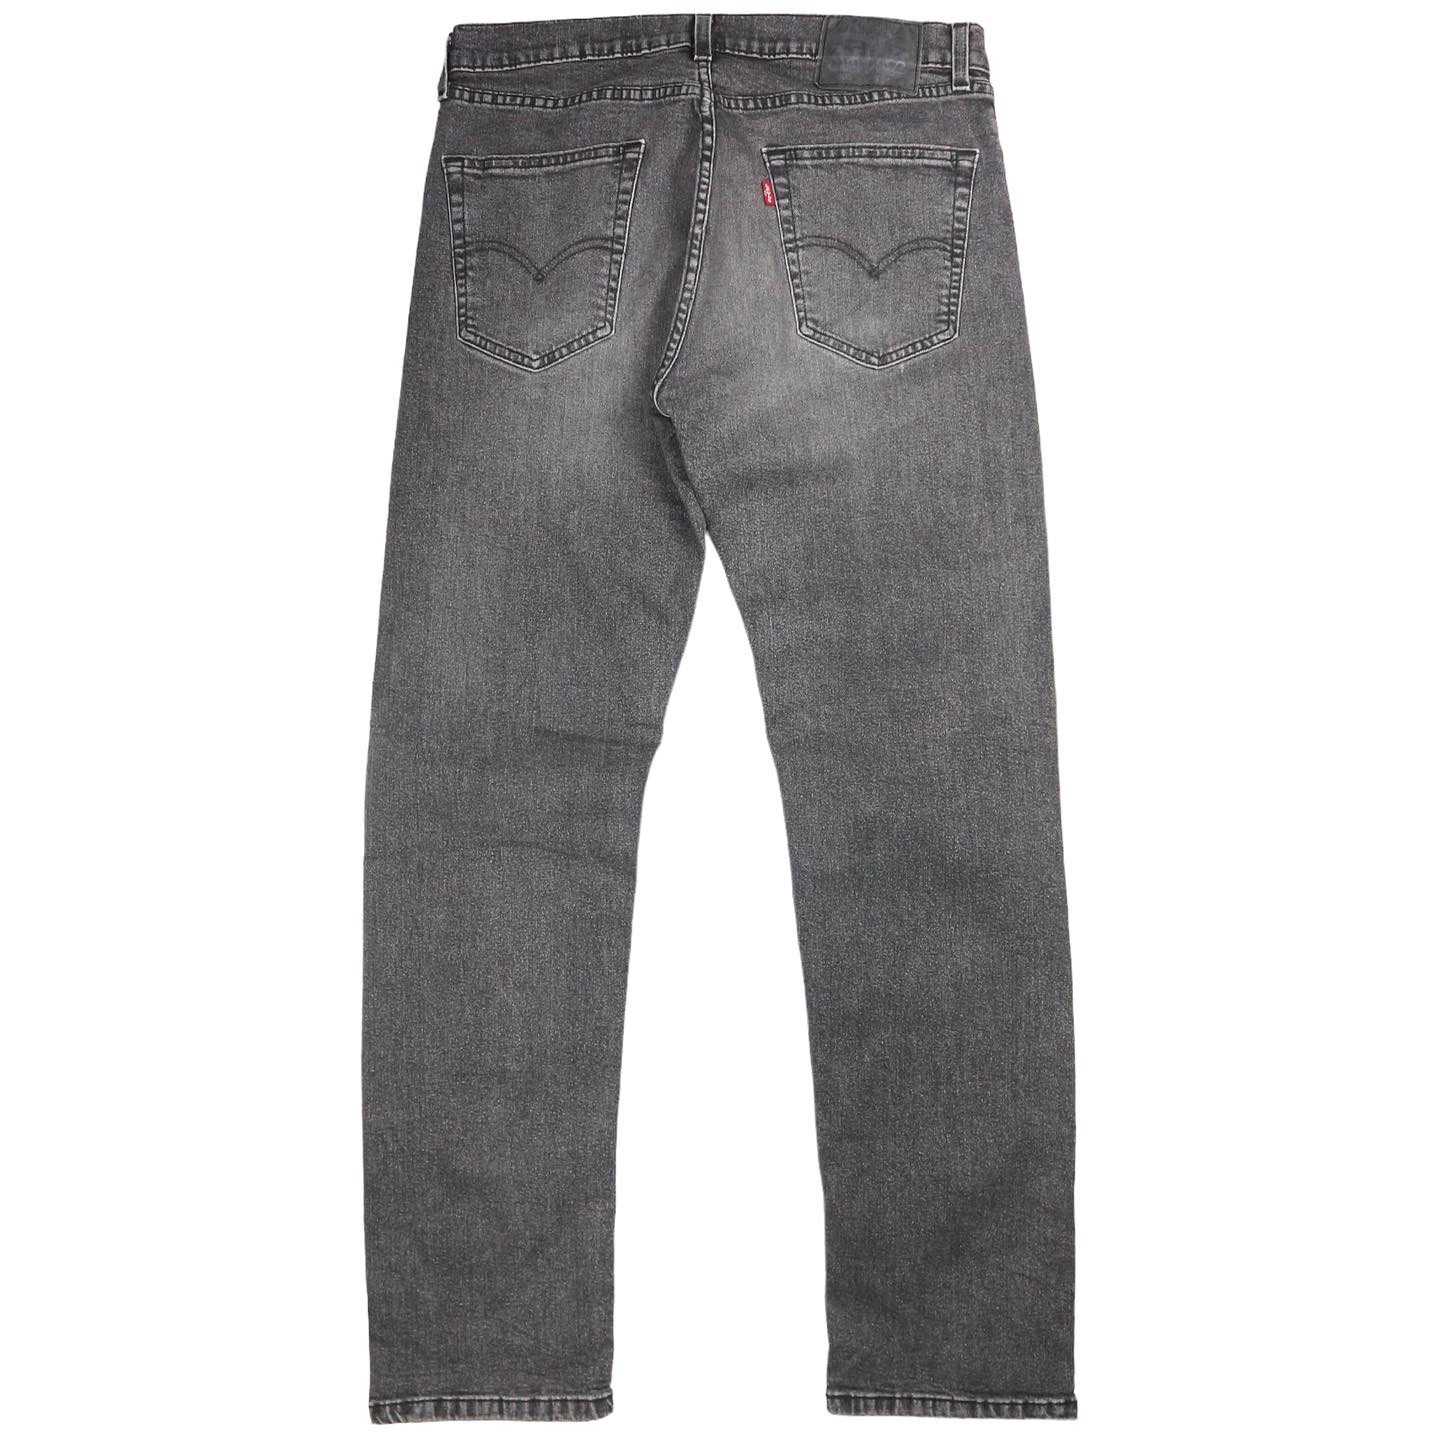 Levi’s 505 Jeans Size 32